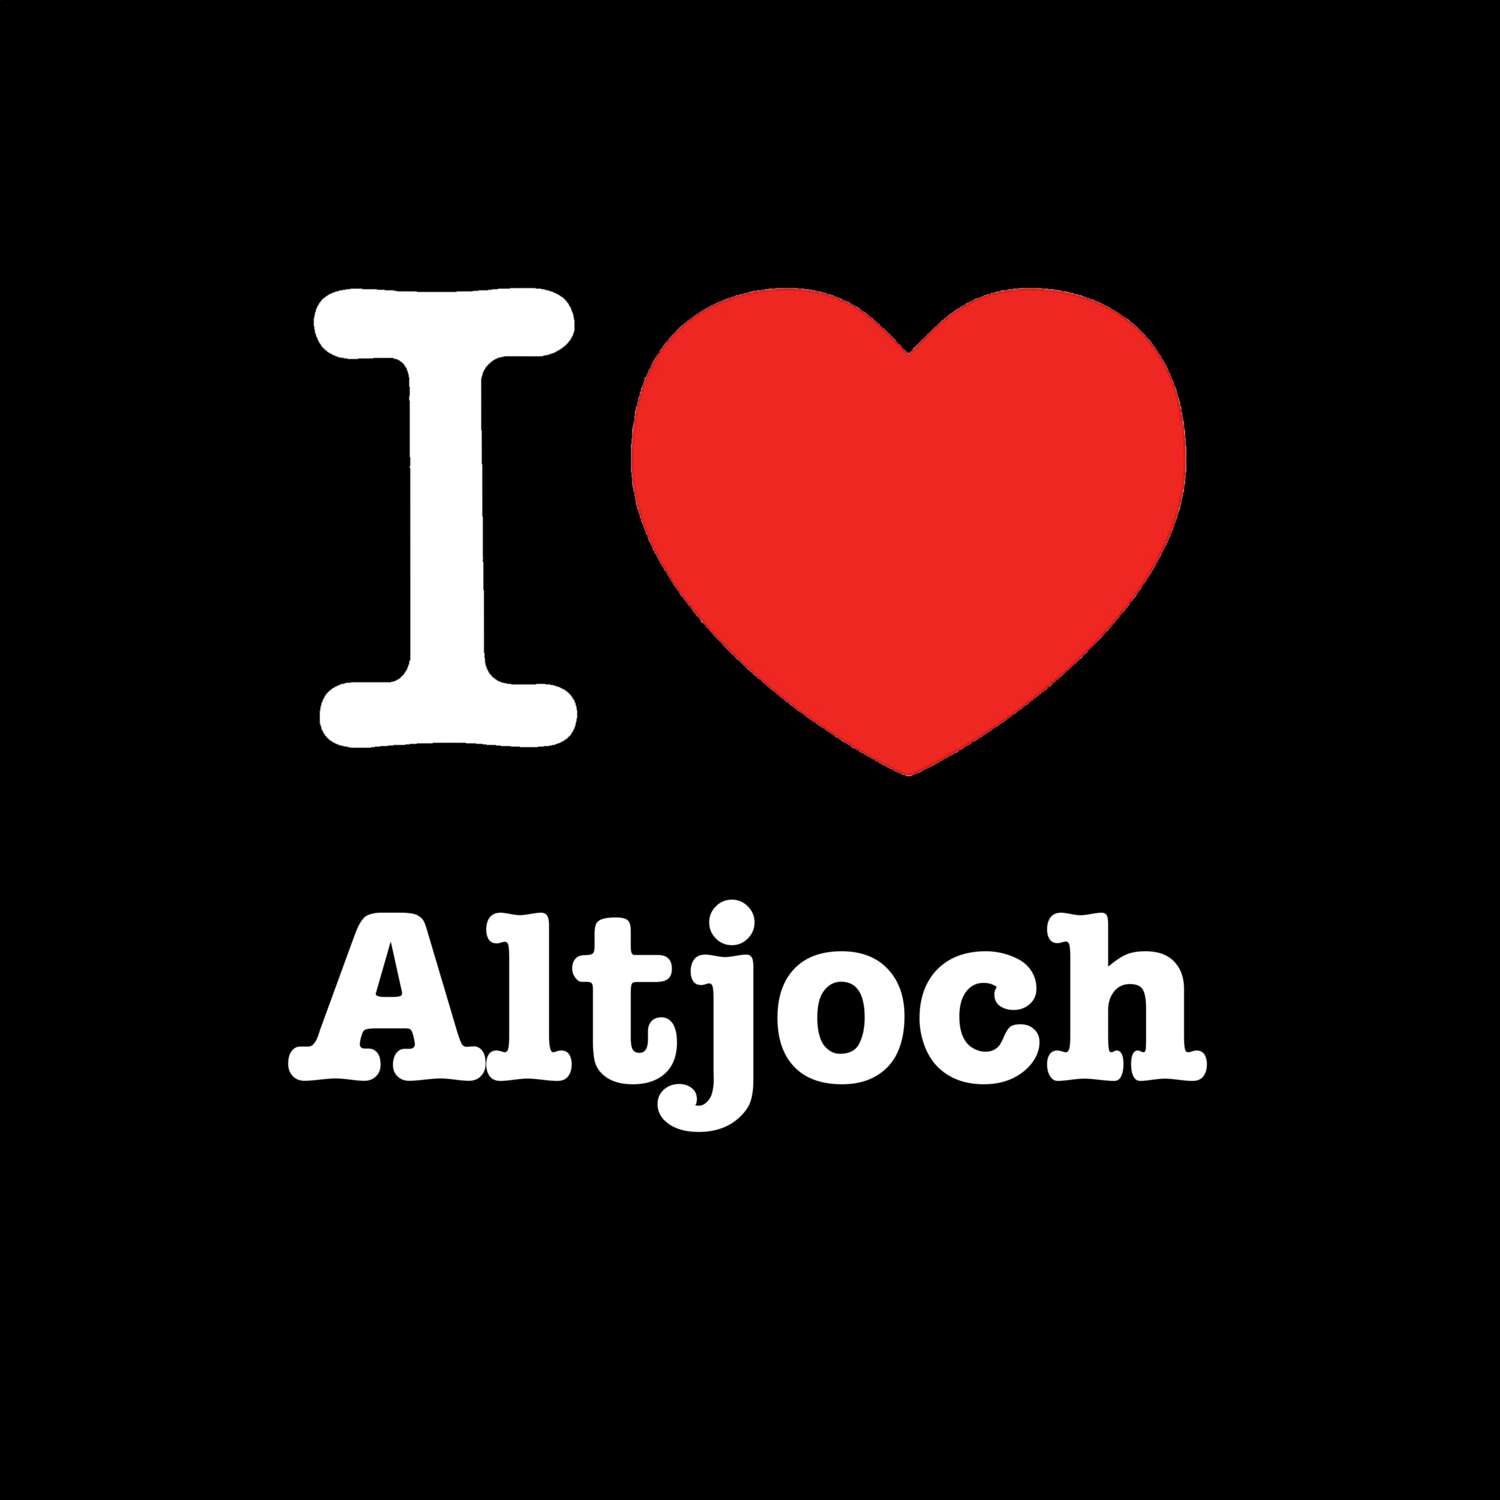 Altjoch T-Shirt »I love«